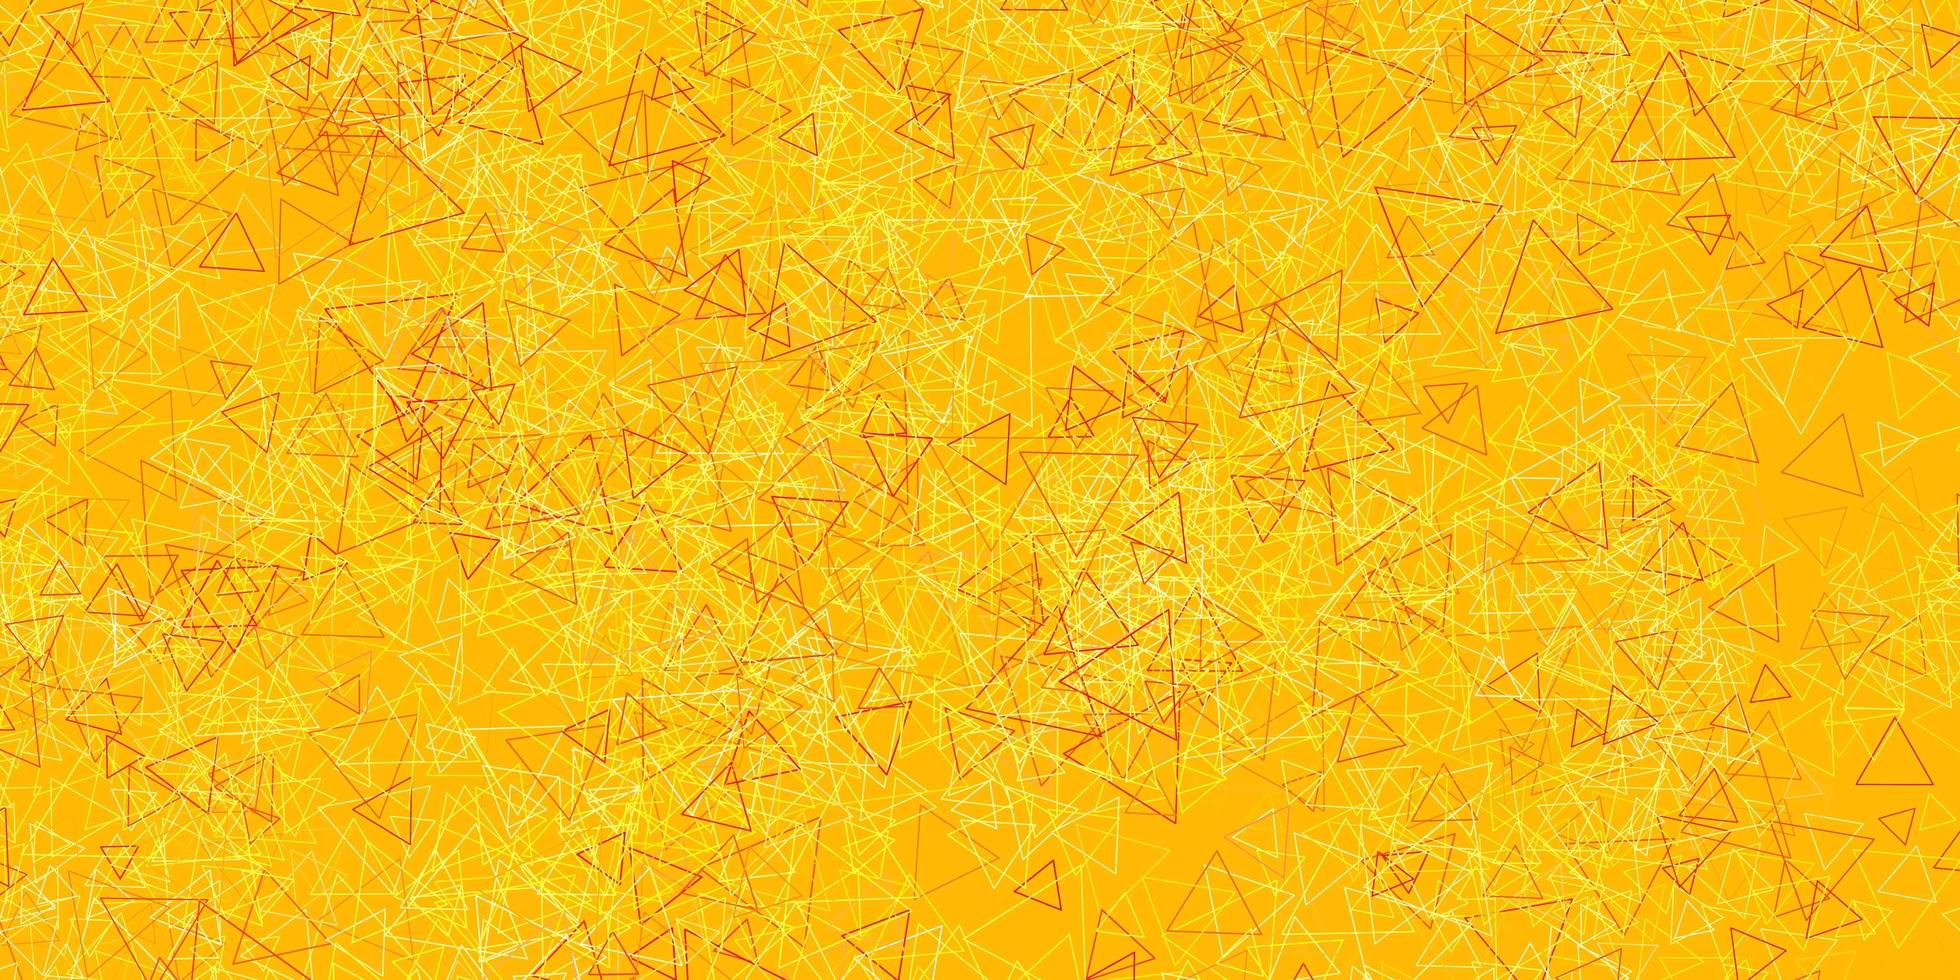 hellrosa, gelbe Vektorschablone mit Dreiecksformen. vektor